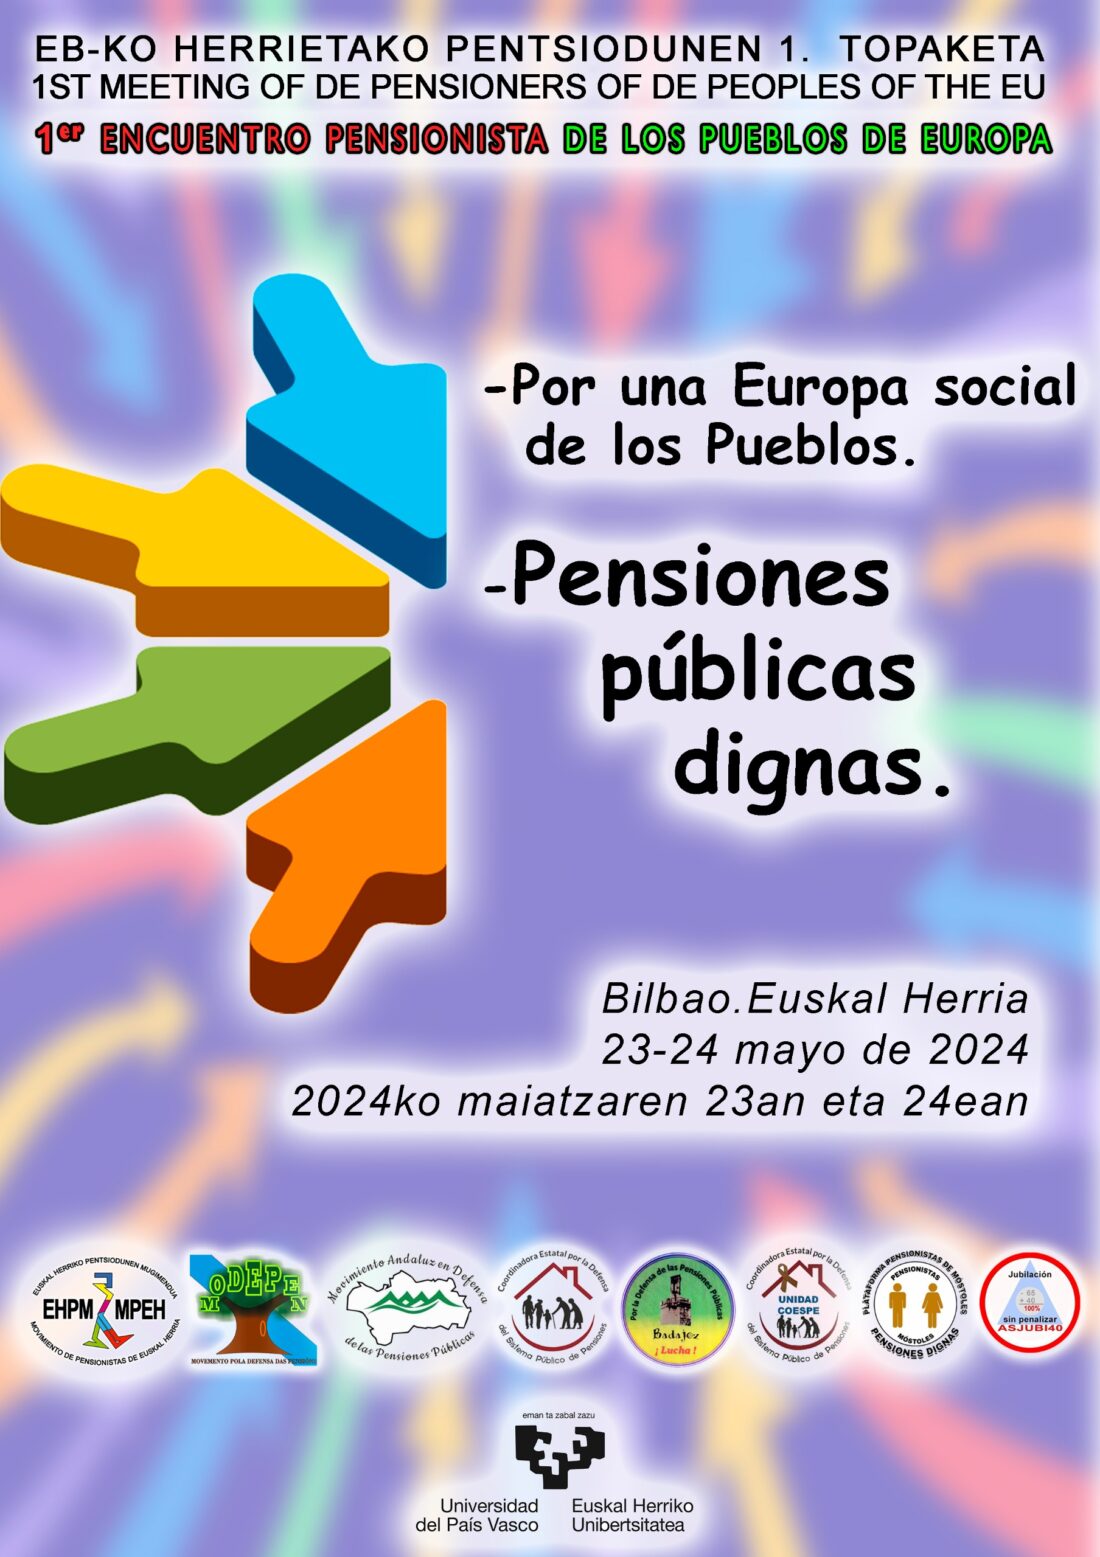 Primer encuentro de personas pensionistas de los Pueblos de la UE, los días 23 y 24 de mayo de 2024 en Bilbao.